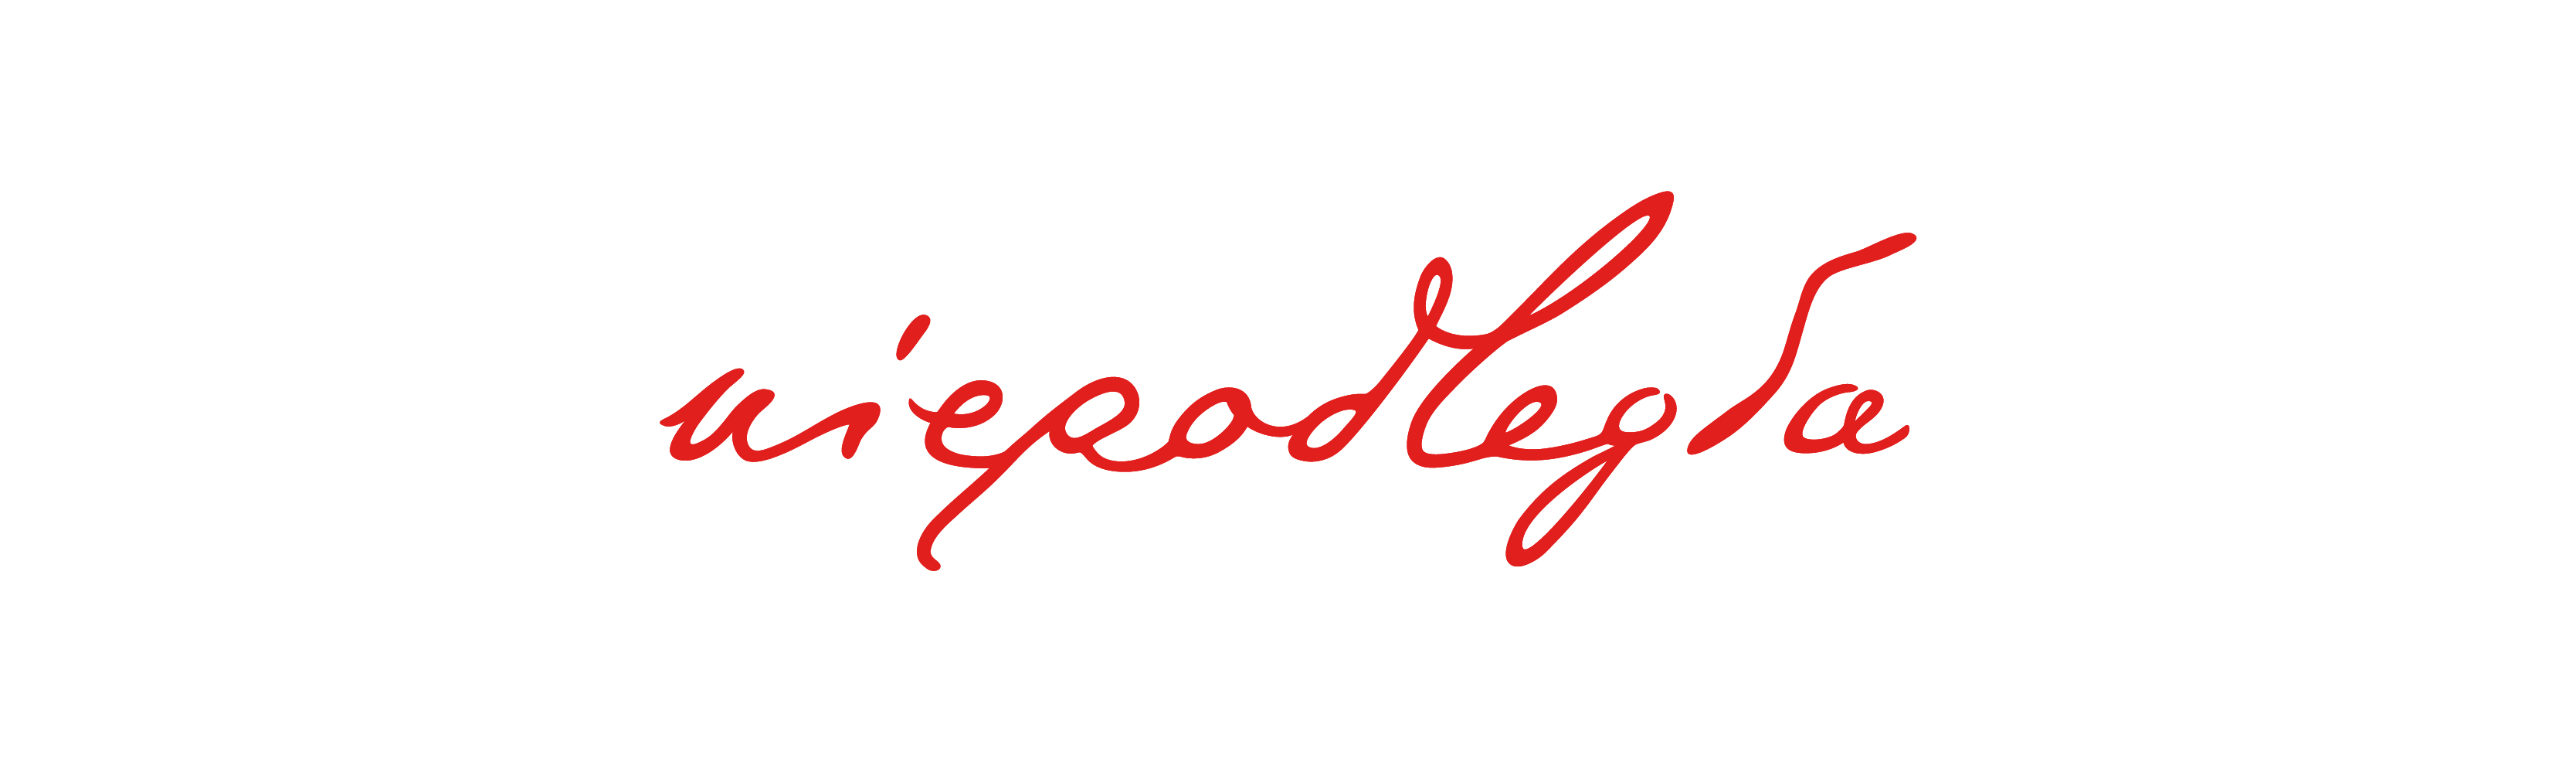 Logo programu Niepodległa. Czerwony napis Niepodległa.